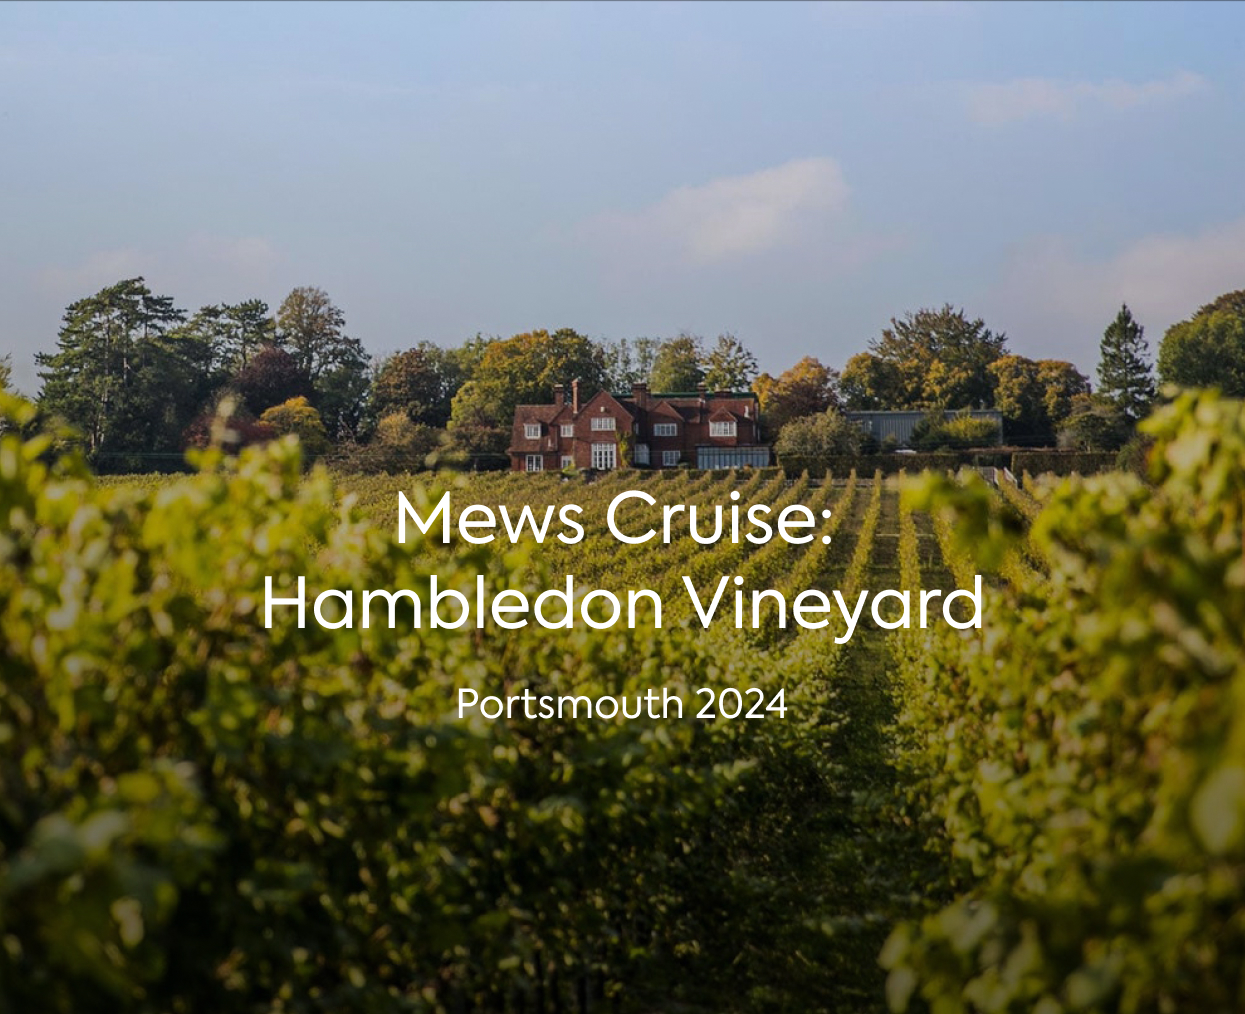 Mews Cruise: Hambledon Vineyard événement